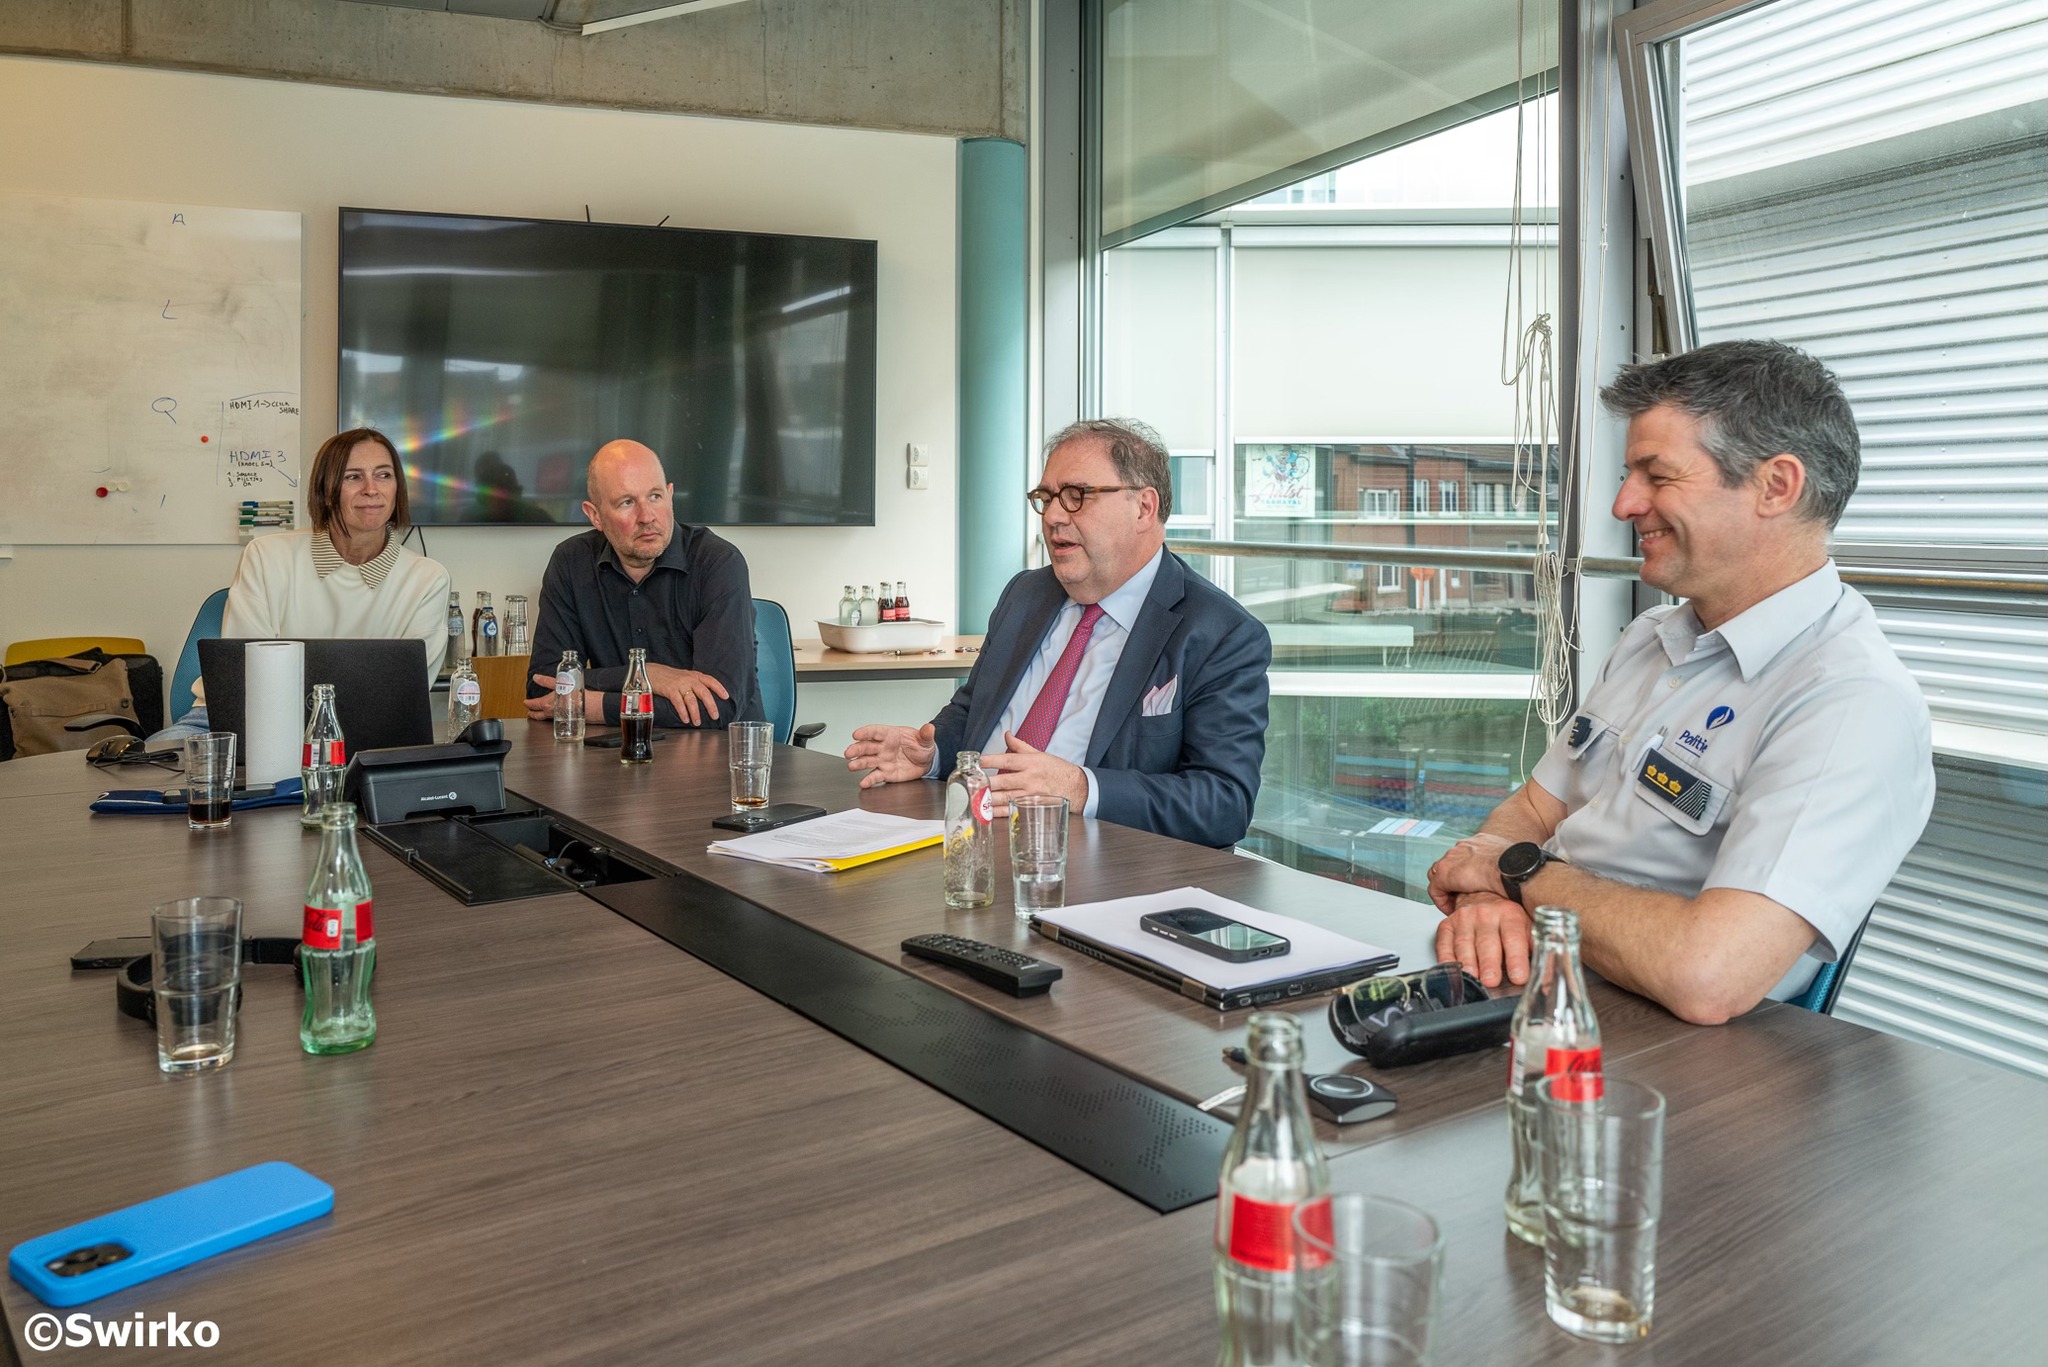 De stad en politie van Aalst hebben op 29 april belangrijke stappen gezet naar de realisatie van een nieuw politiegebouw. 